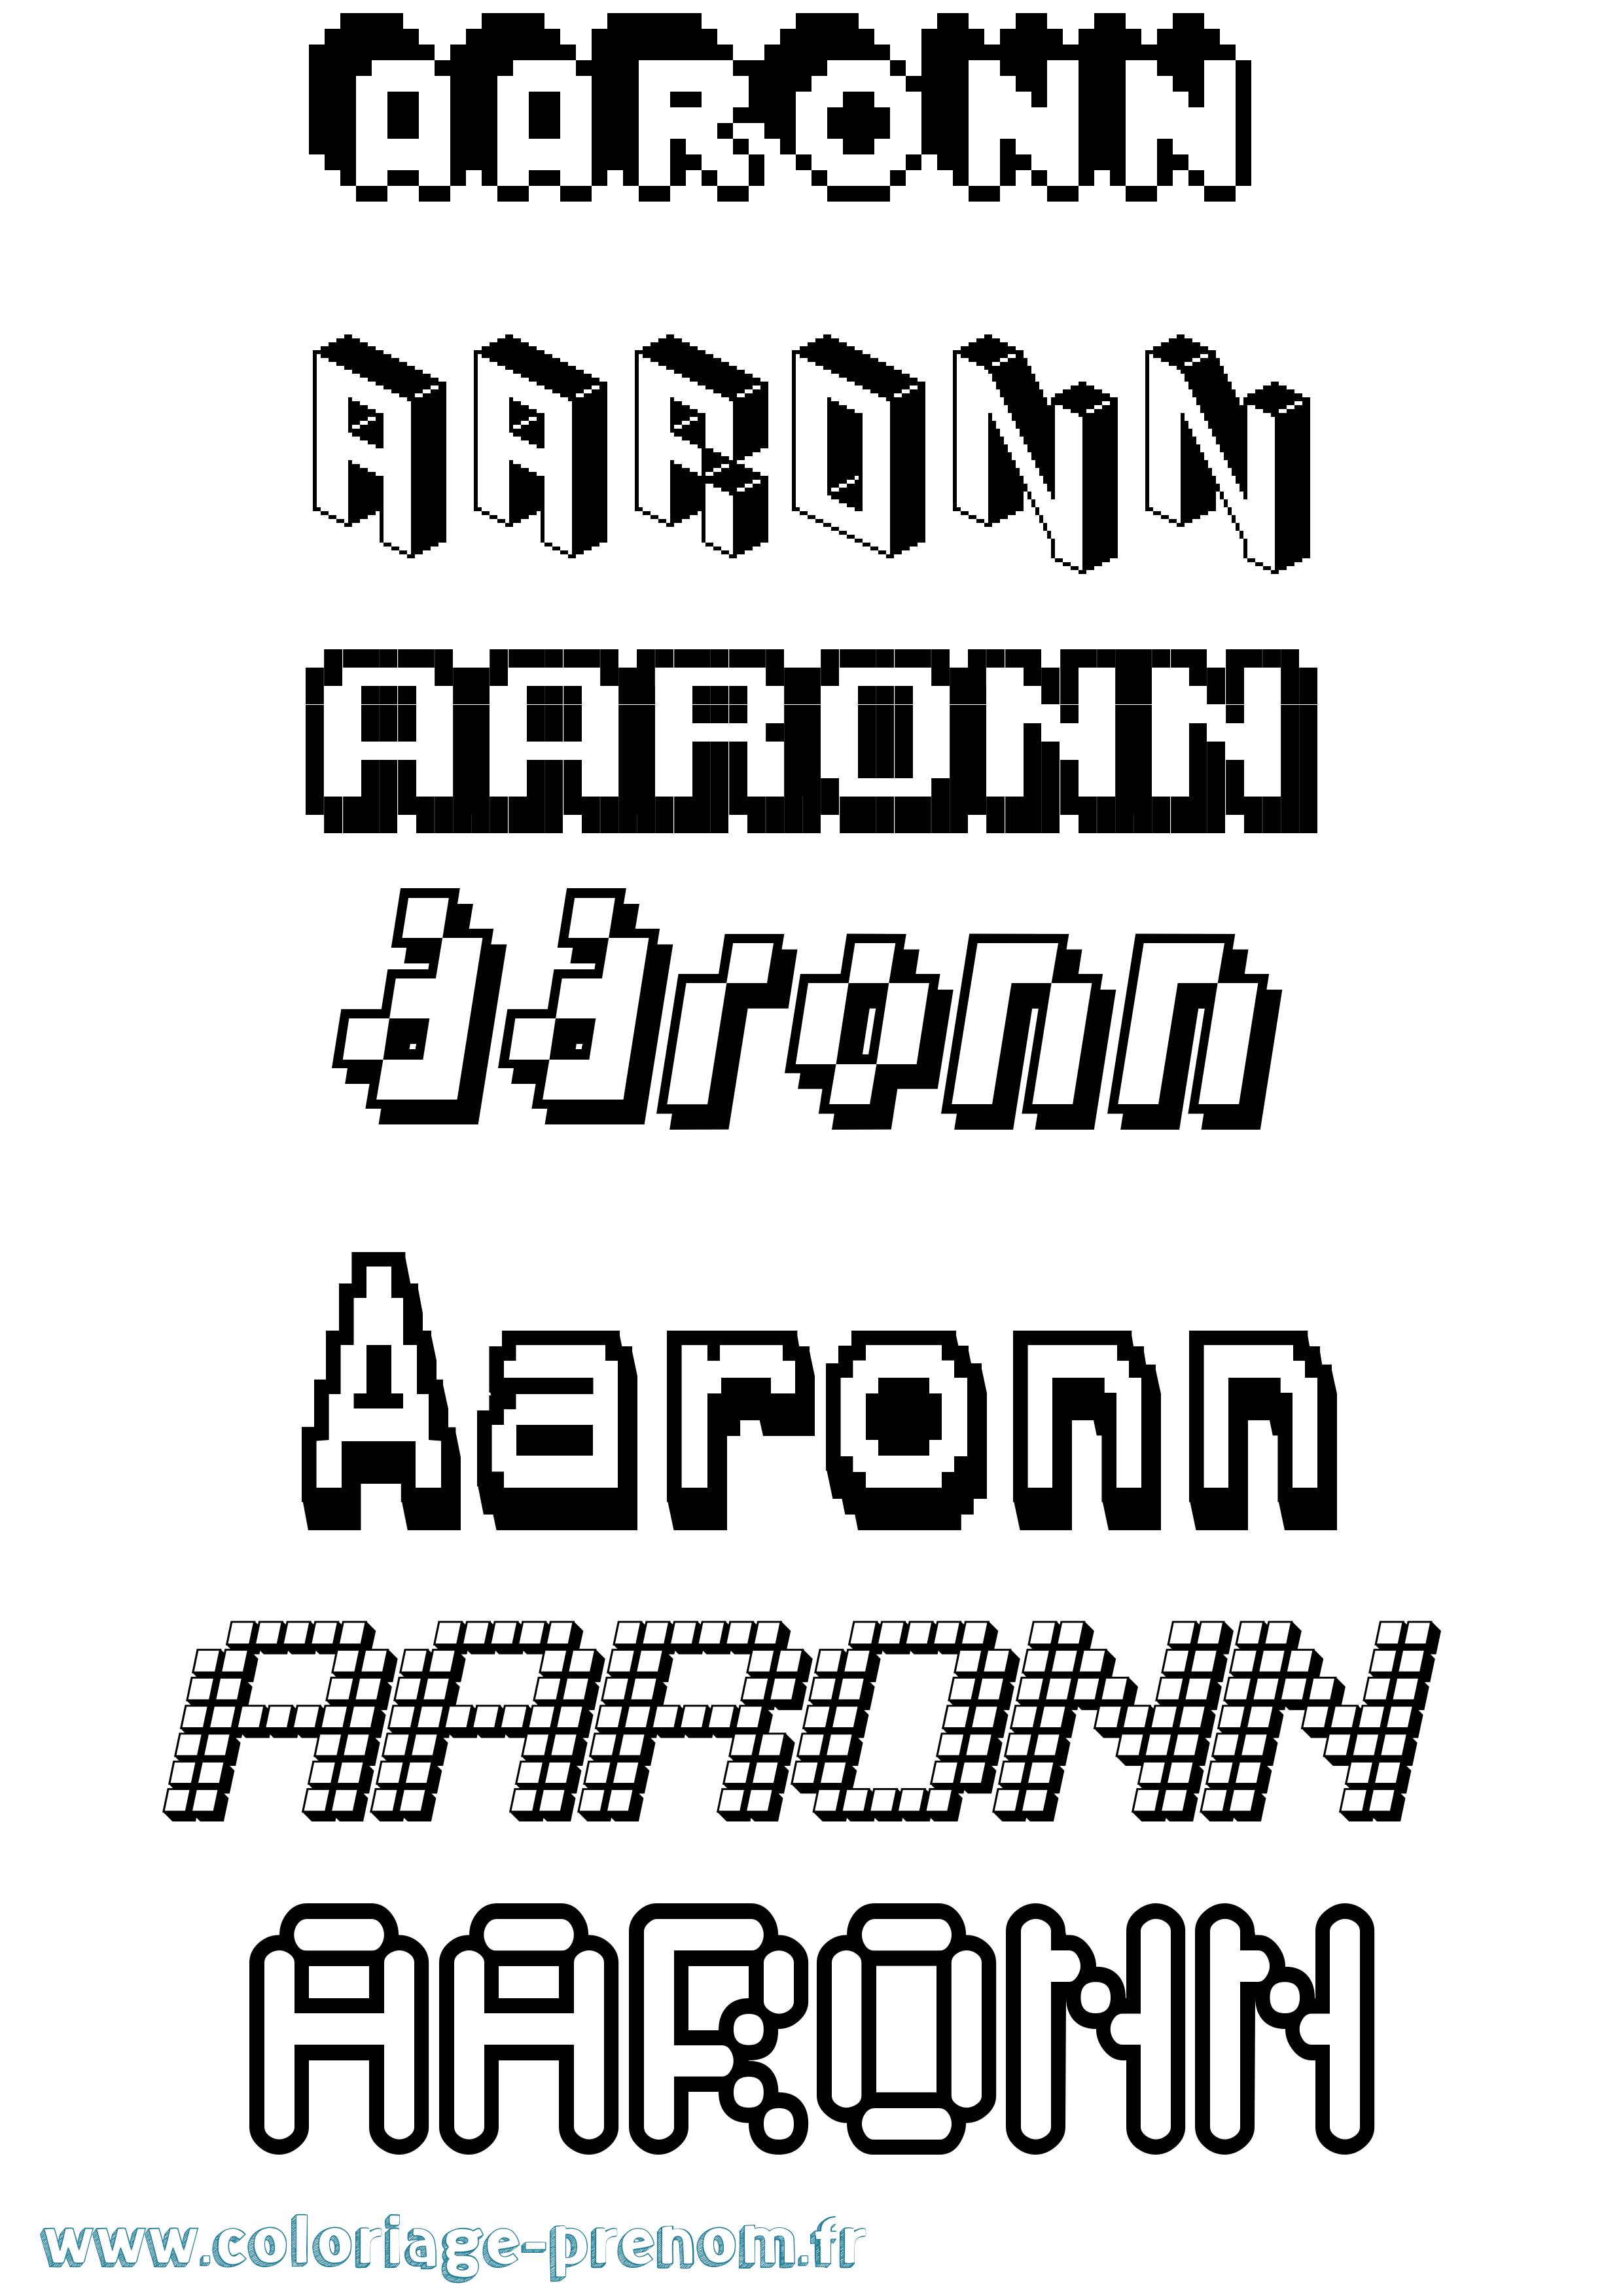 Coloriage prénom Aaronn Pixel